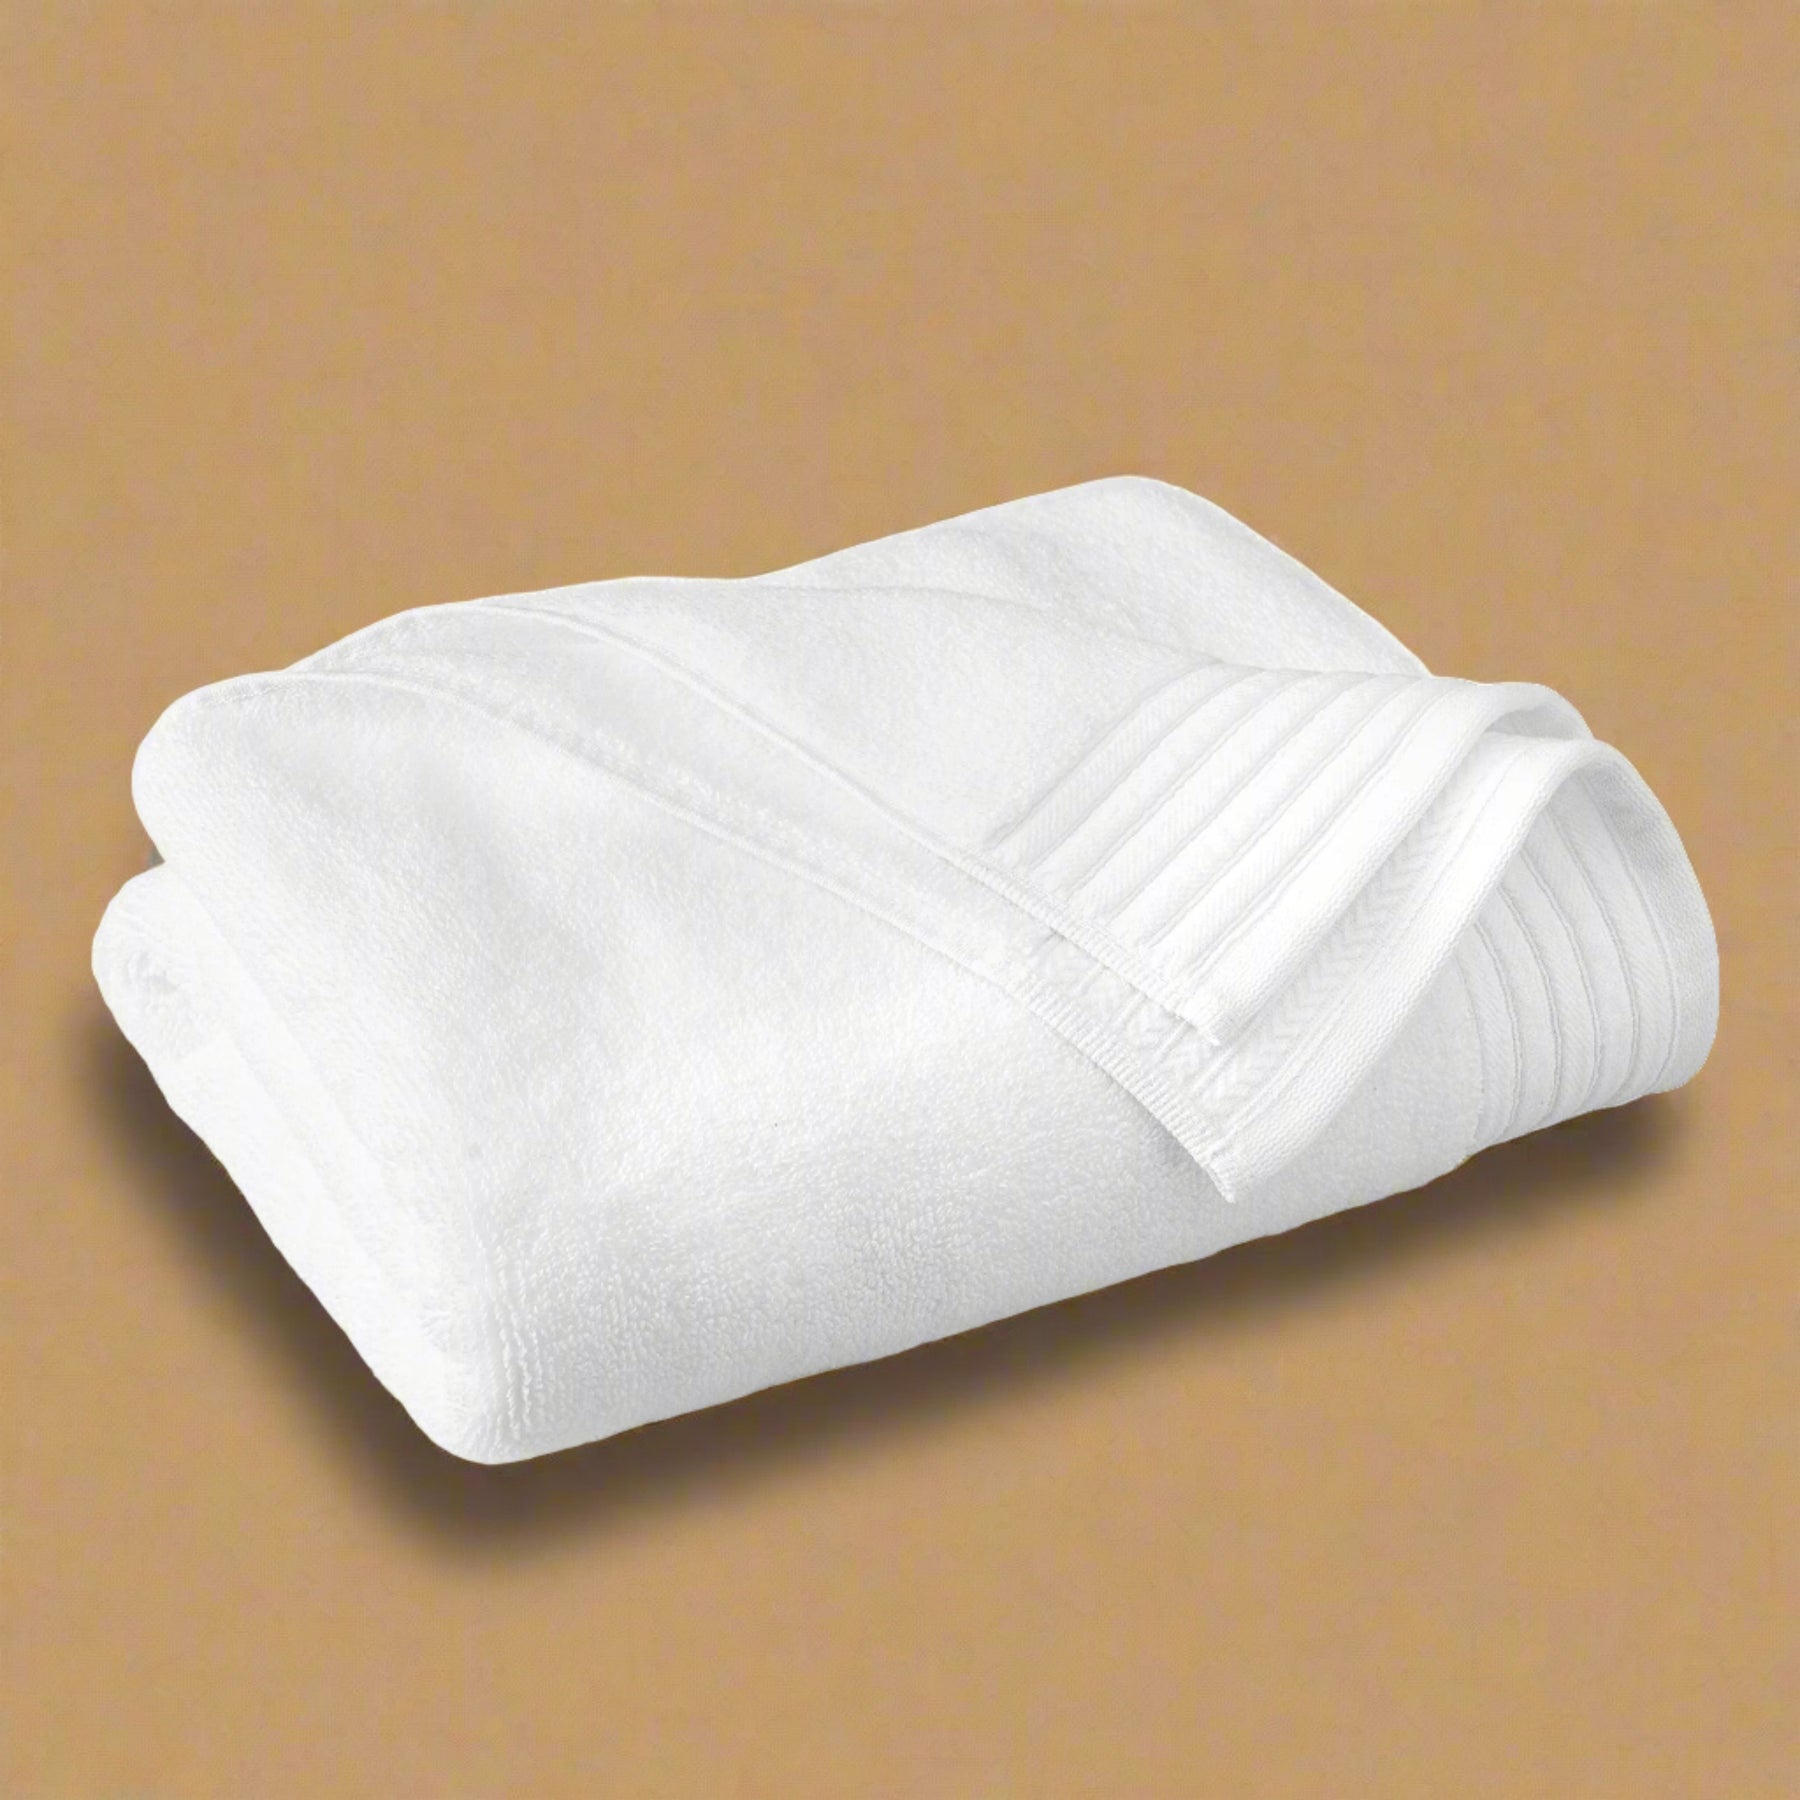 Egyptian Cotton Bath Towel Set of 6 - White - beddingbag.com